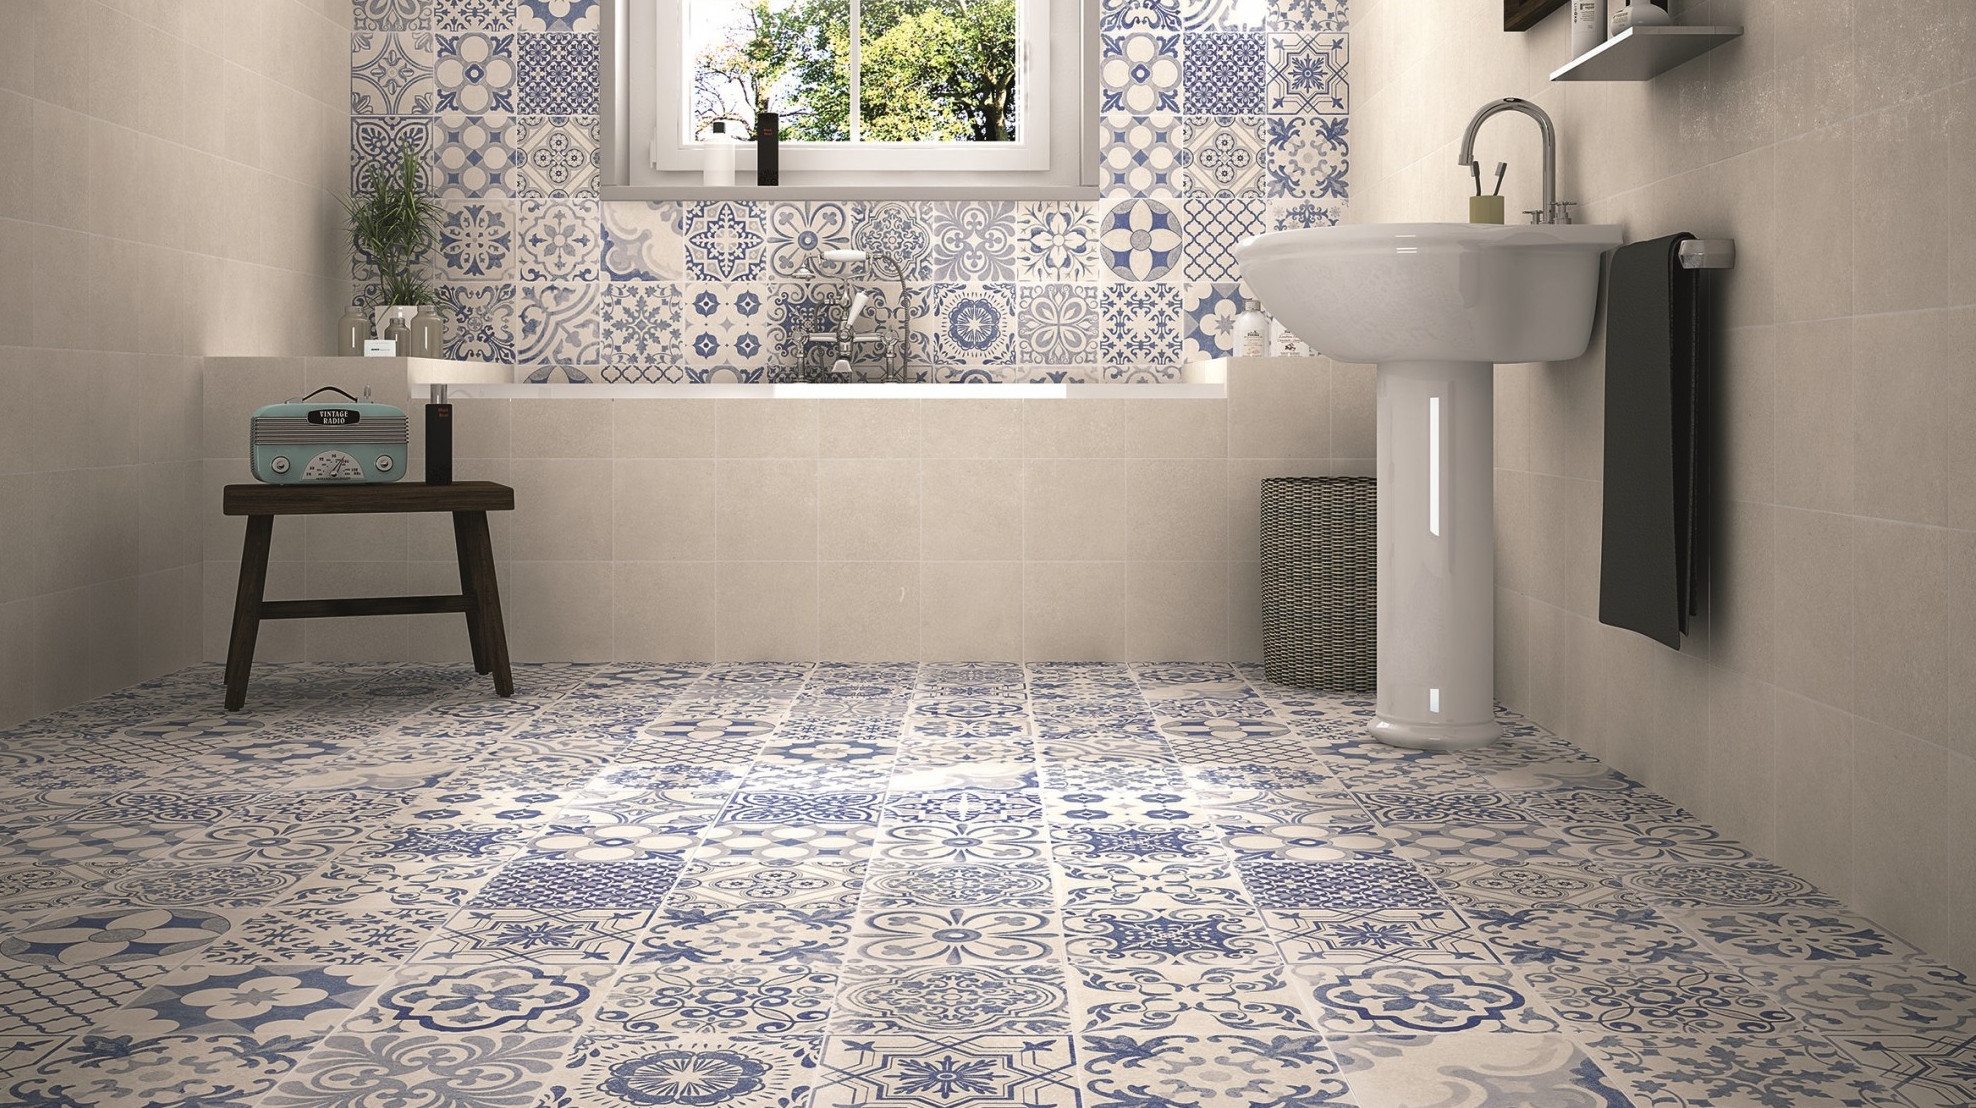 Tiled Bathroom Floors
 Patterned Floor Tiles to Turn Heads Tile Mountain